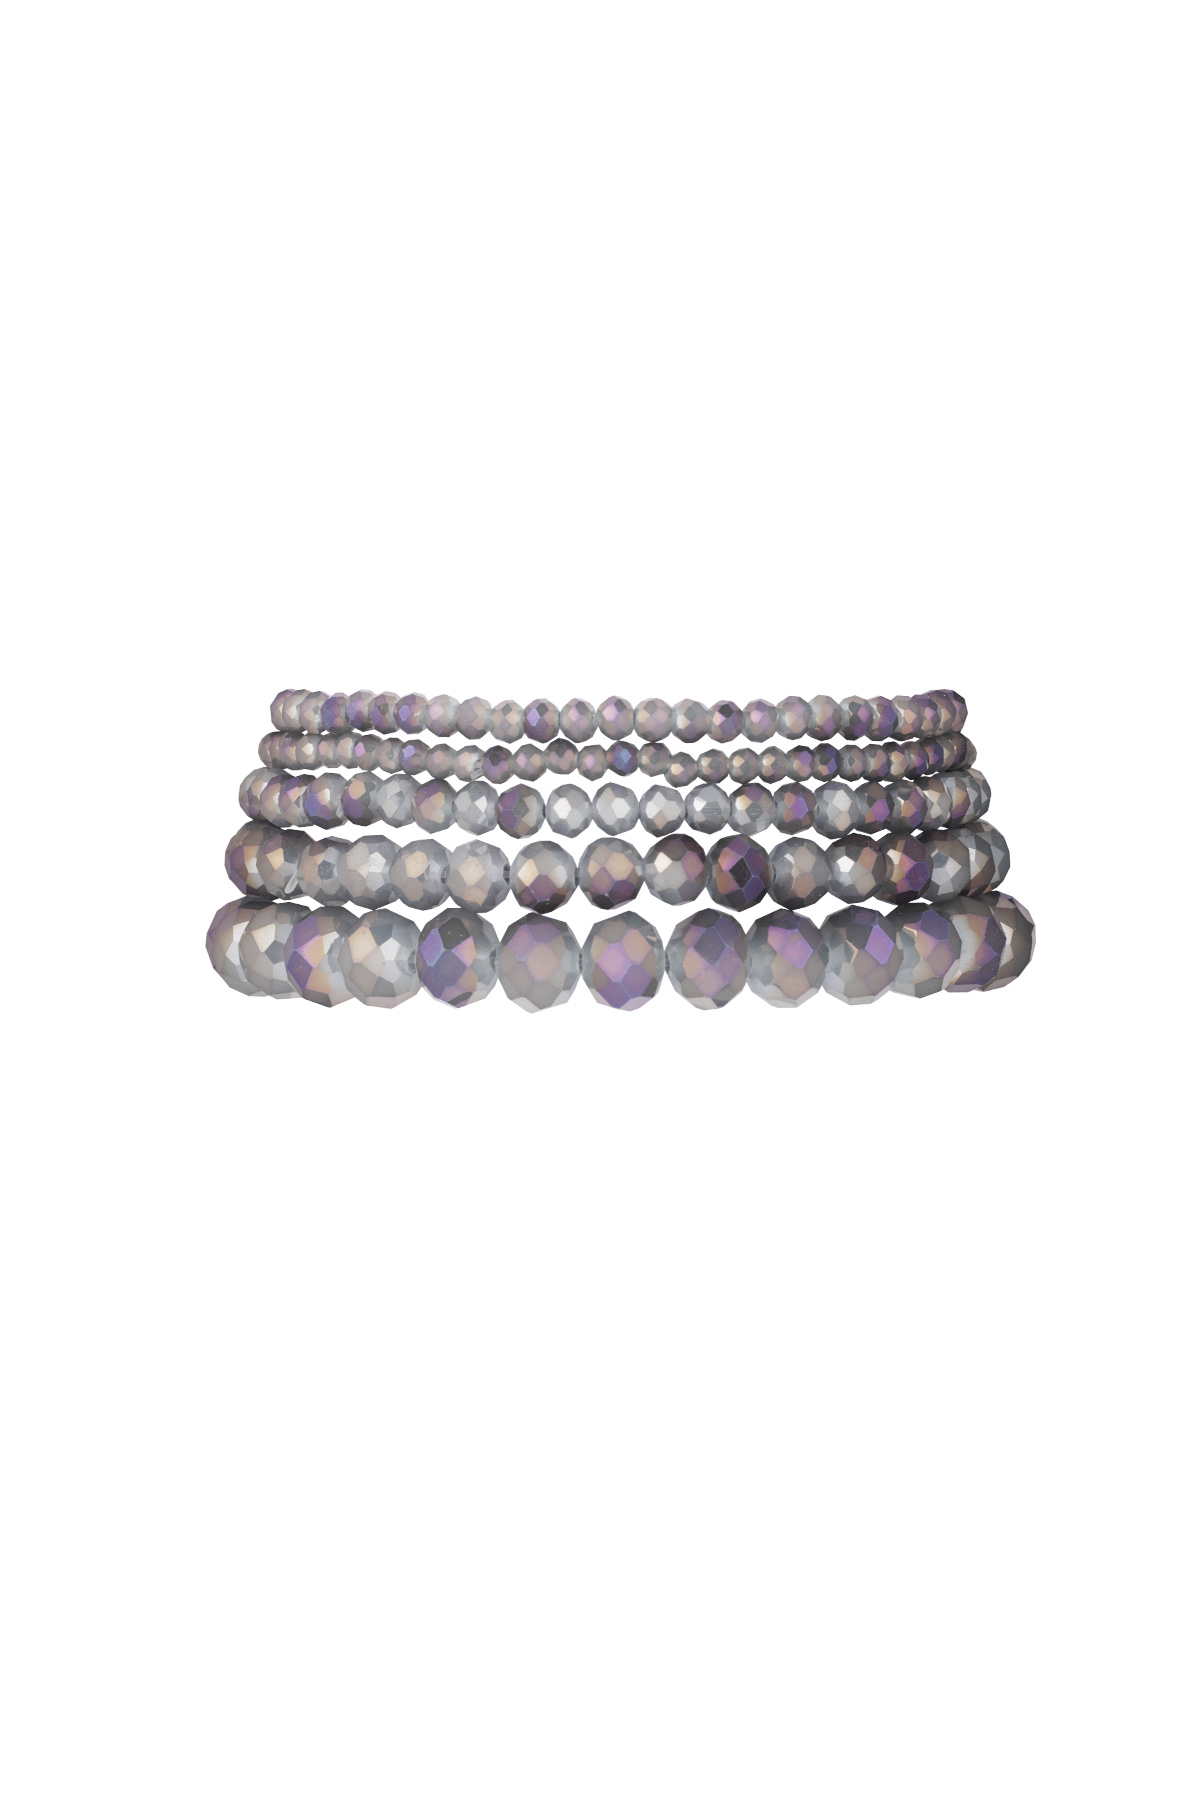 Set van 5 kristal armbanden paars - blauw paars